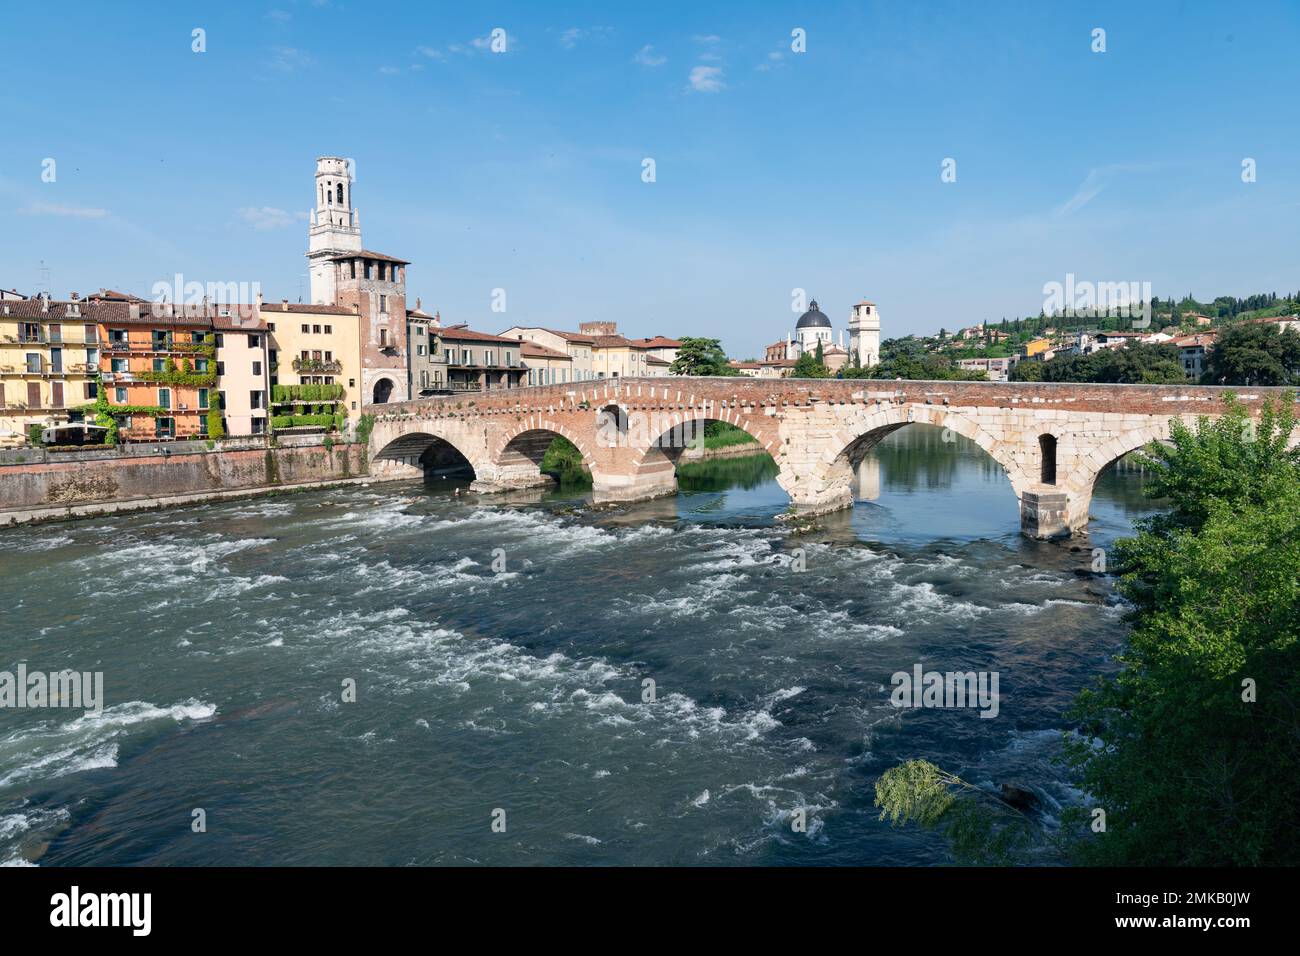 Acqua in rapido movimento che scorre sotto gli archi del ponte pietra che attraversa il Fiume Adige a Verona, Italia, adagiato contro il cielo azzurro Foto Stock